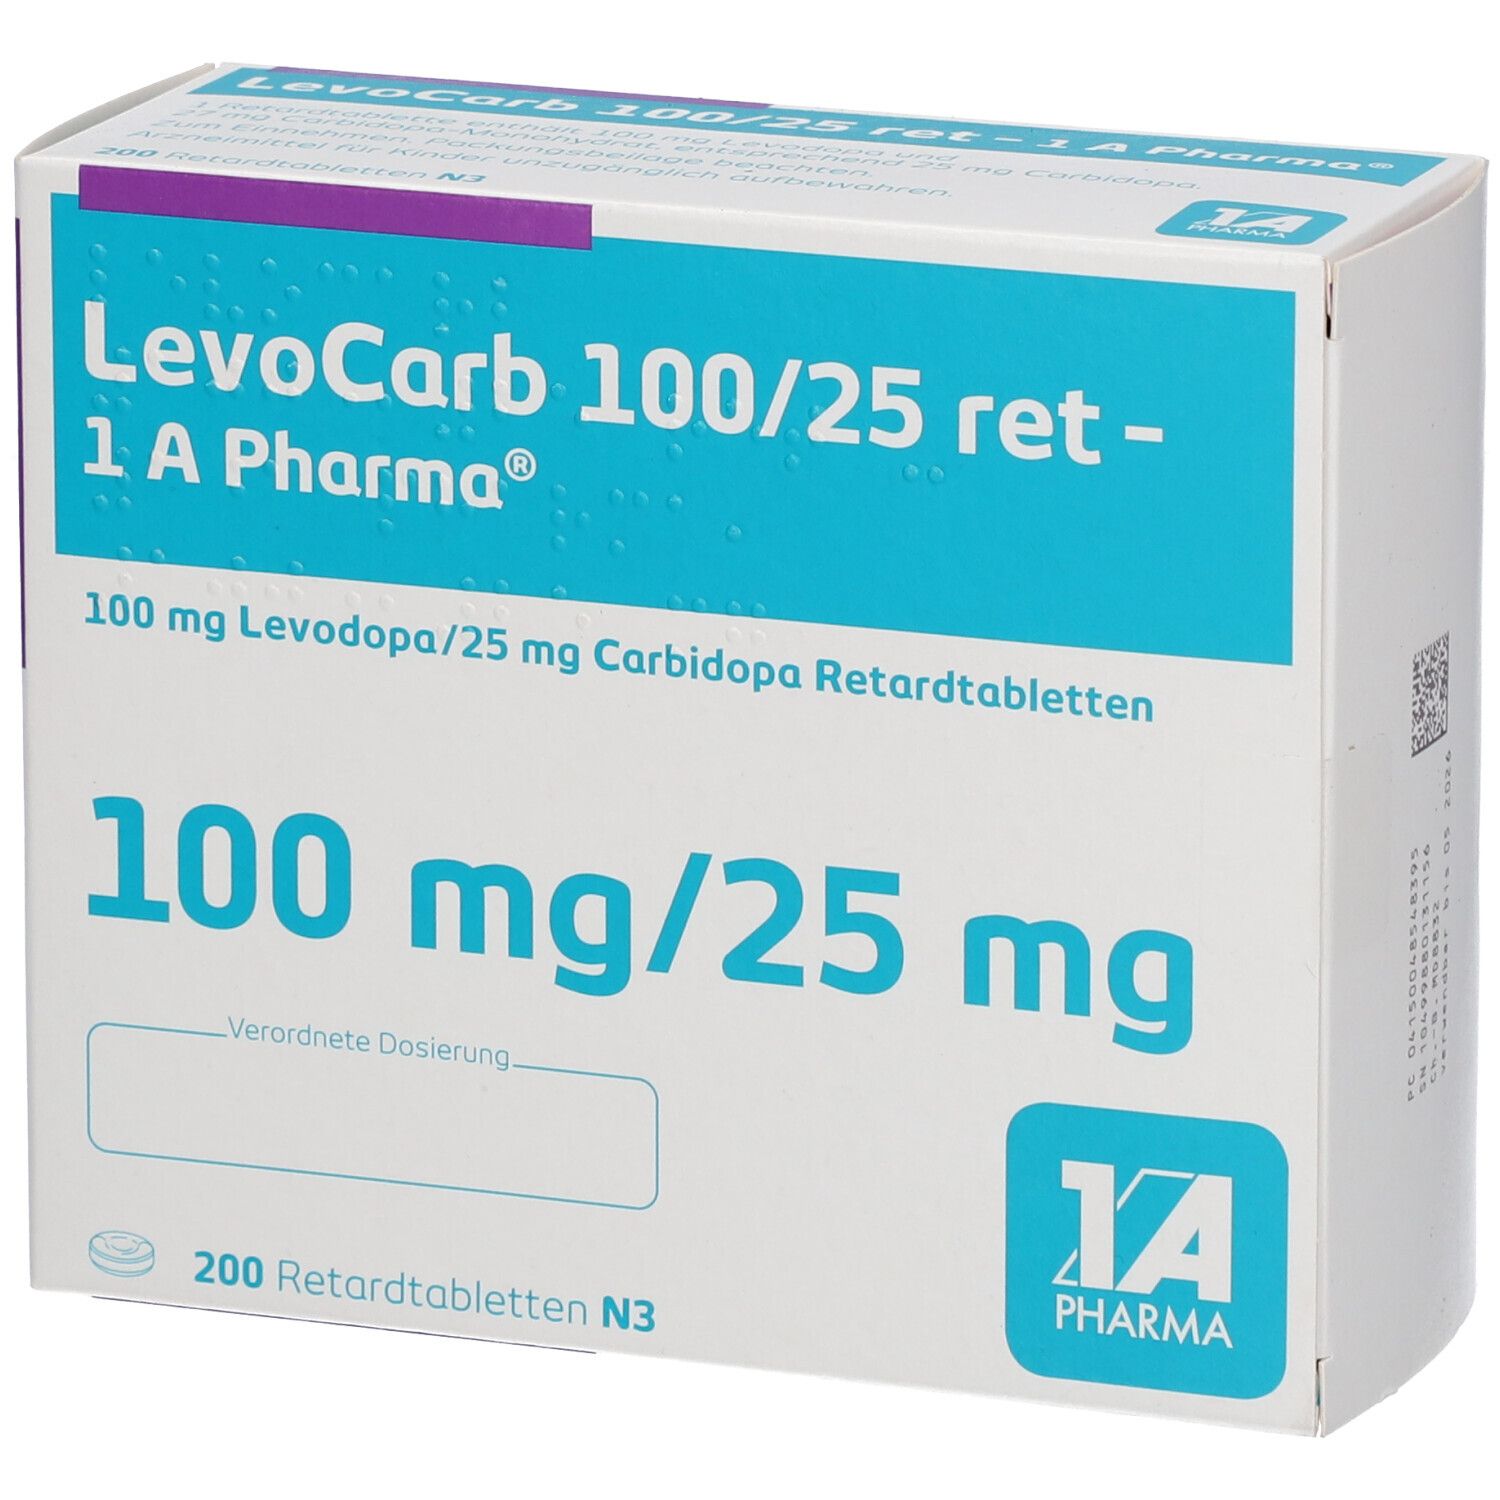 Levocarb 100/25  1A Pha